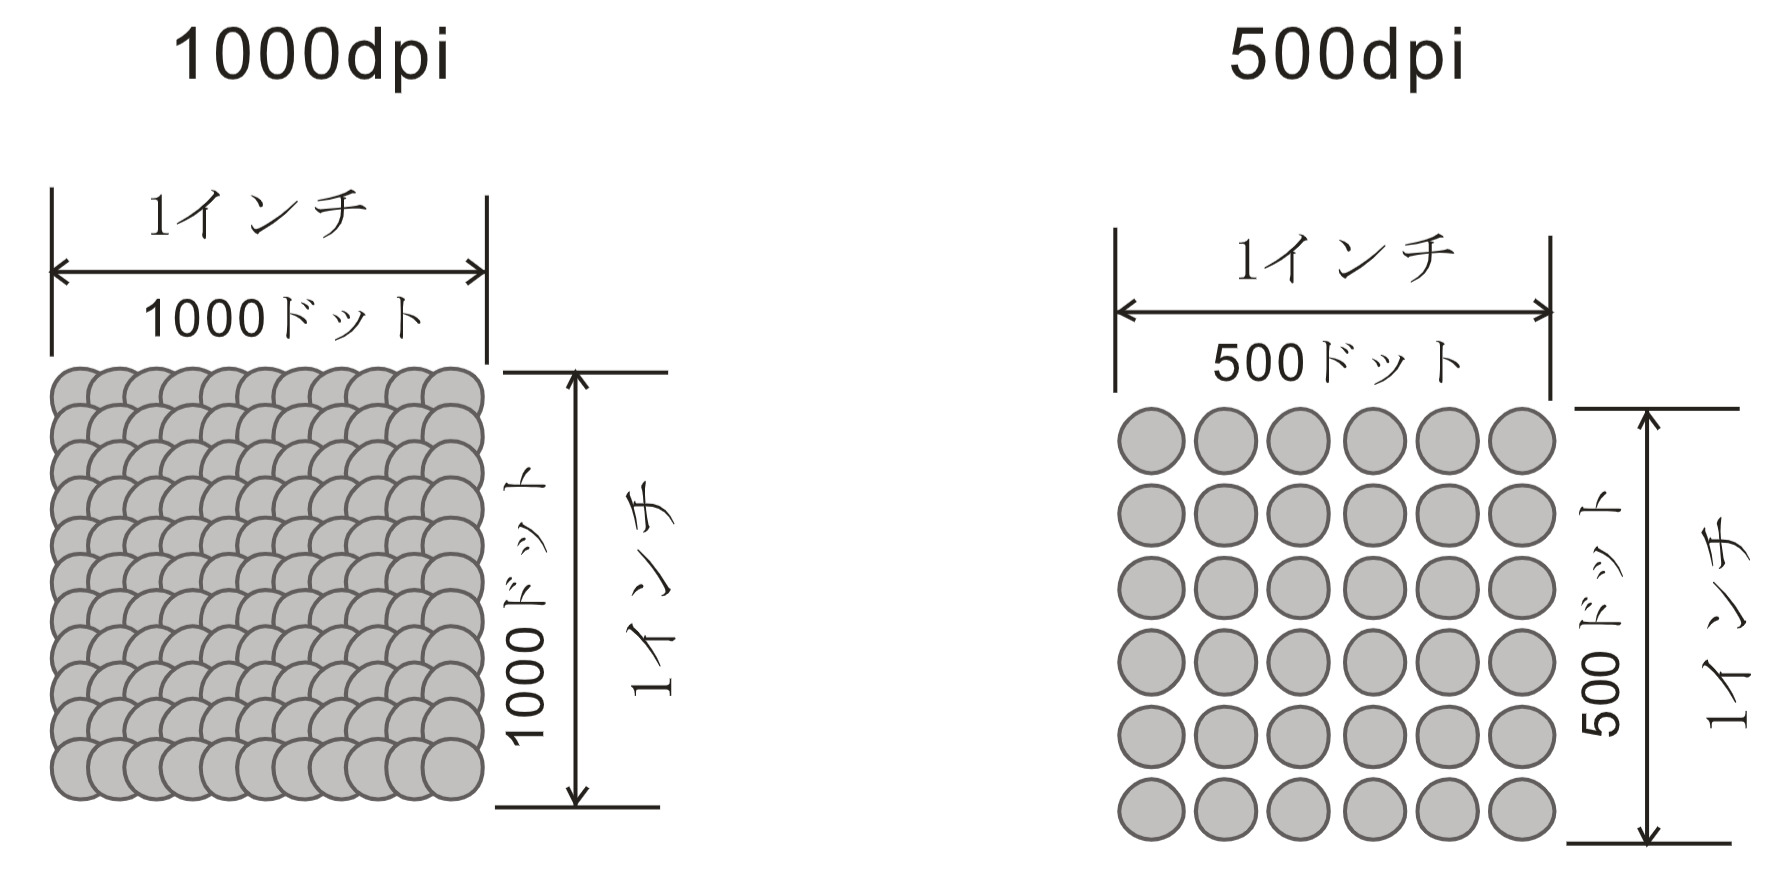 500dpiと1000dpiのドット密度が異なる